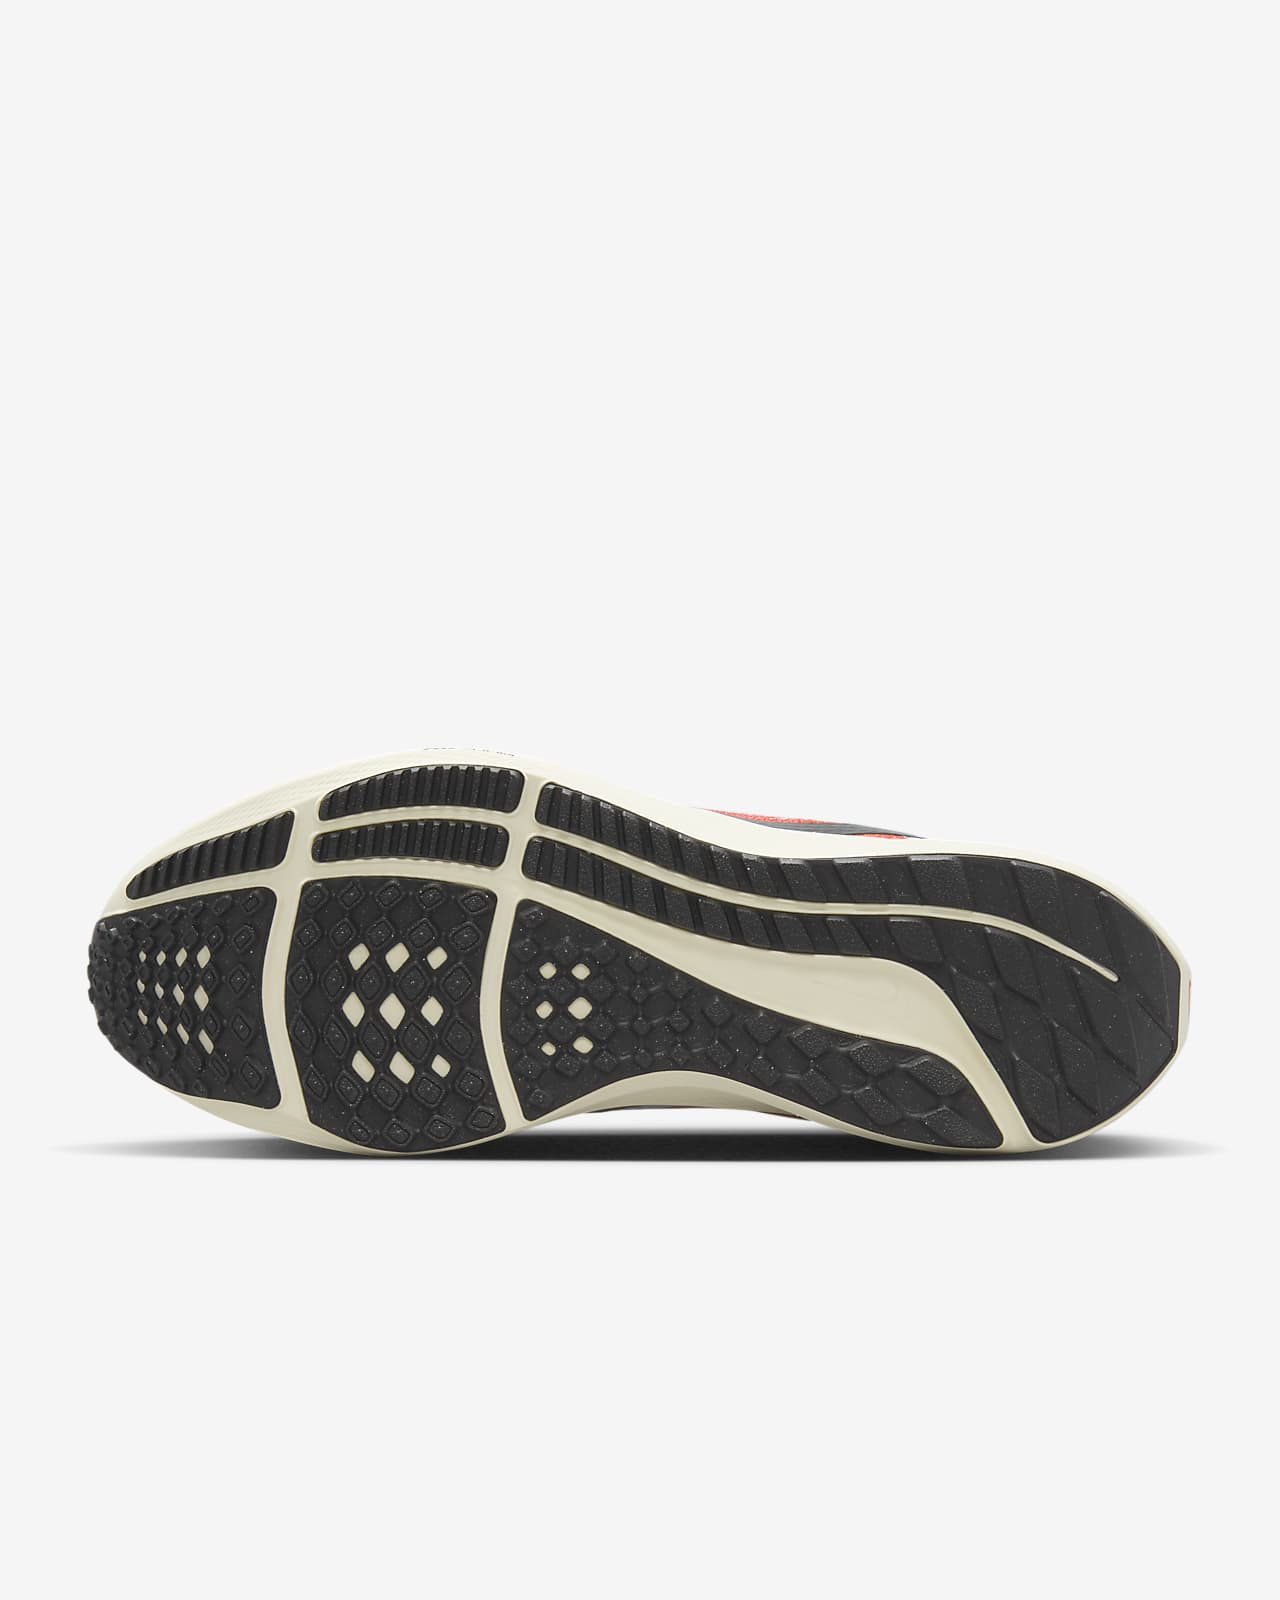 Nike Zoom Pegasus 37 Eliud Kipchoge Running Shoes, Size 7 DD9478-100 | eBay